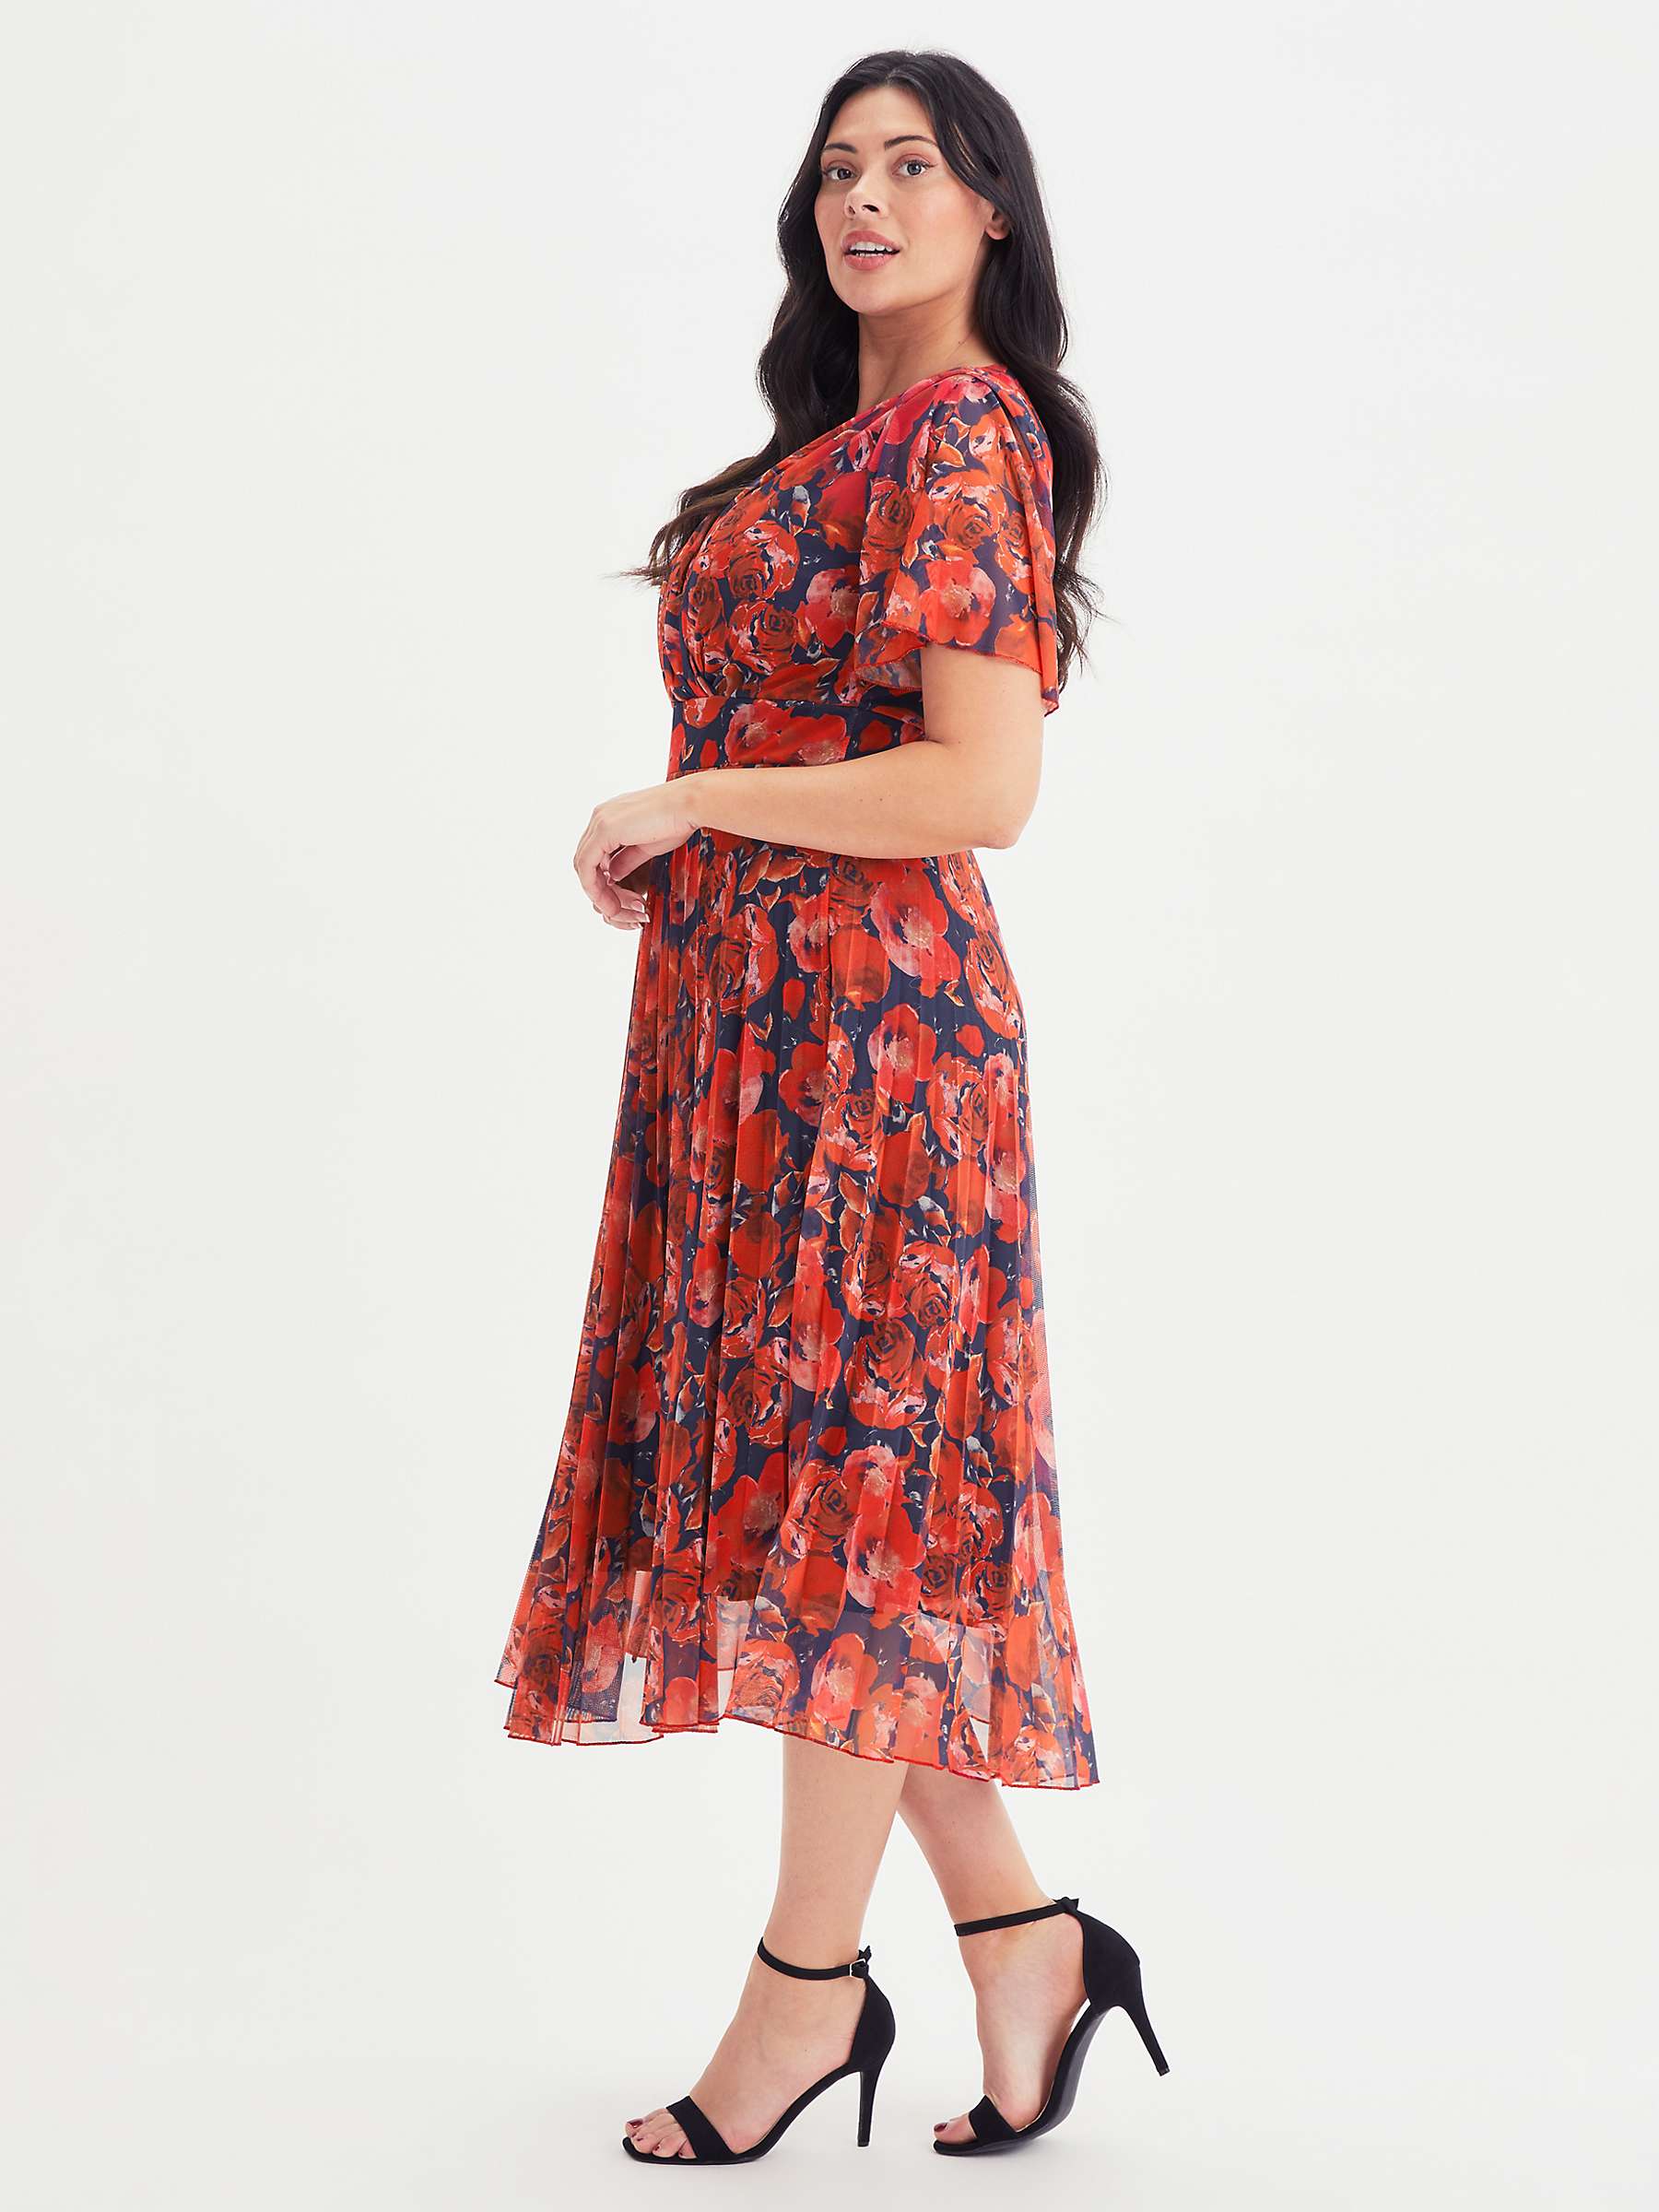 Buy Scarlett & Jo Pleated Skirt Dress, Red/Multi Online at johnlewis.com